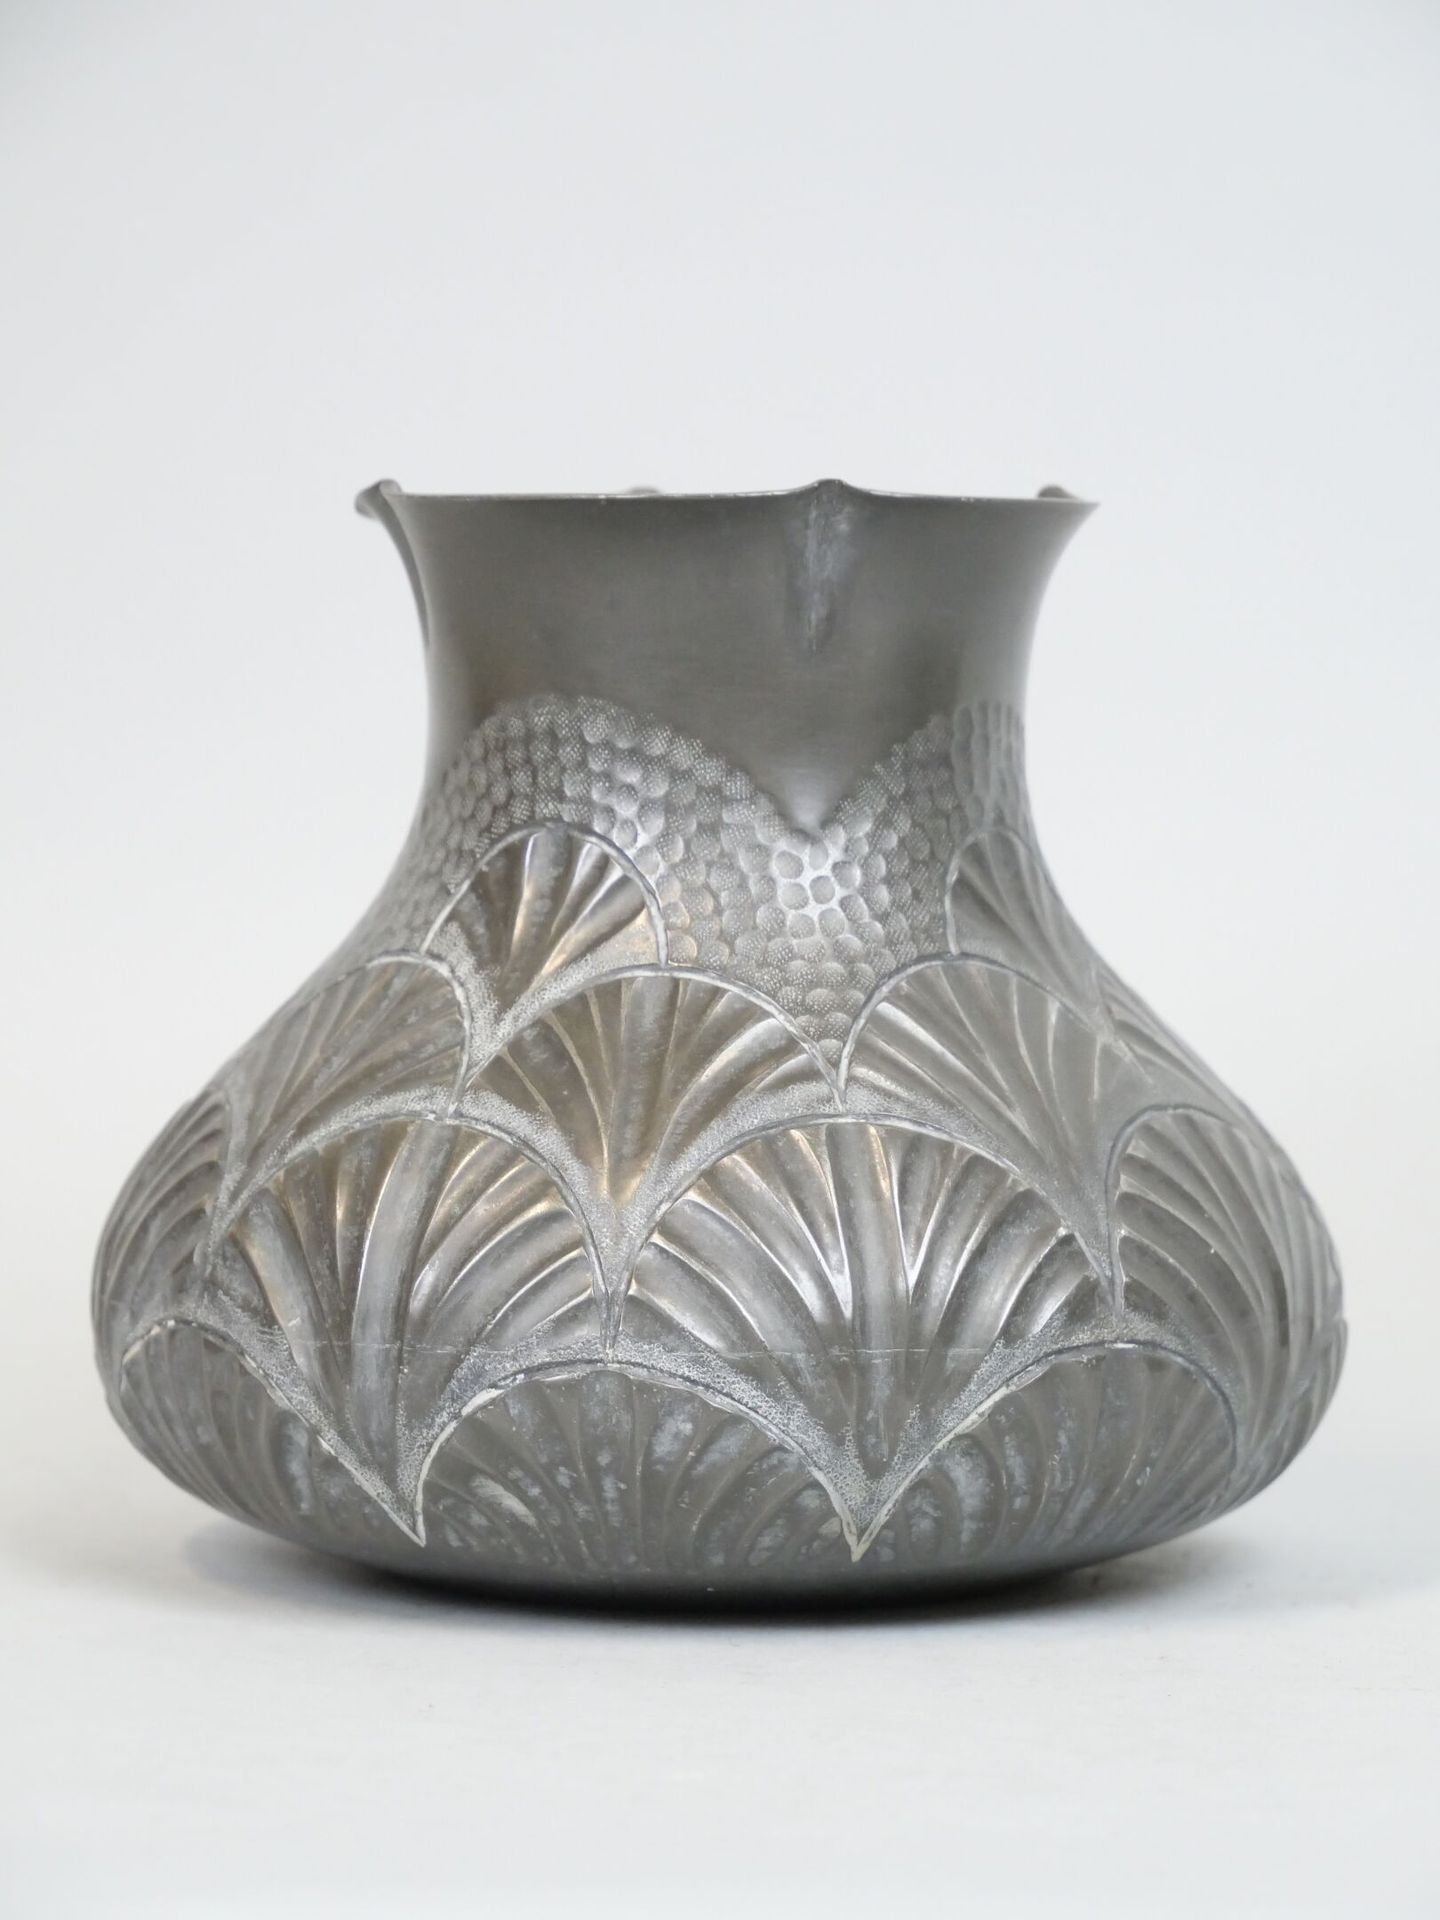 Null 錾刻和锤击的锡镴花瓶，带有风格化的叶子，署名Laurana
新艺术主义风格
尺寸：15 x 17厘米

拍品将于2023年6月8日星期四在巴黎第十五区&hellip;